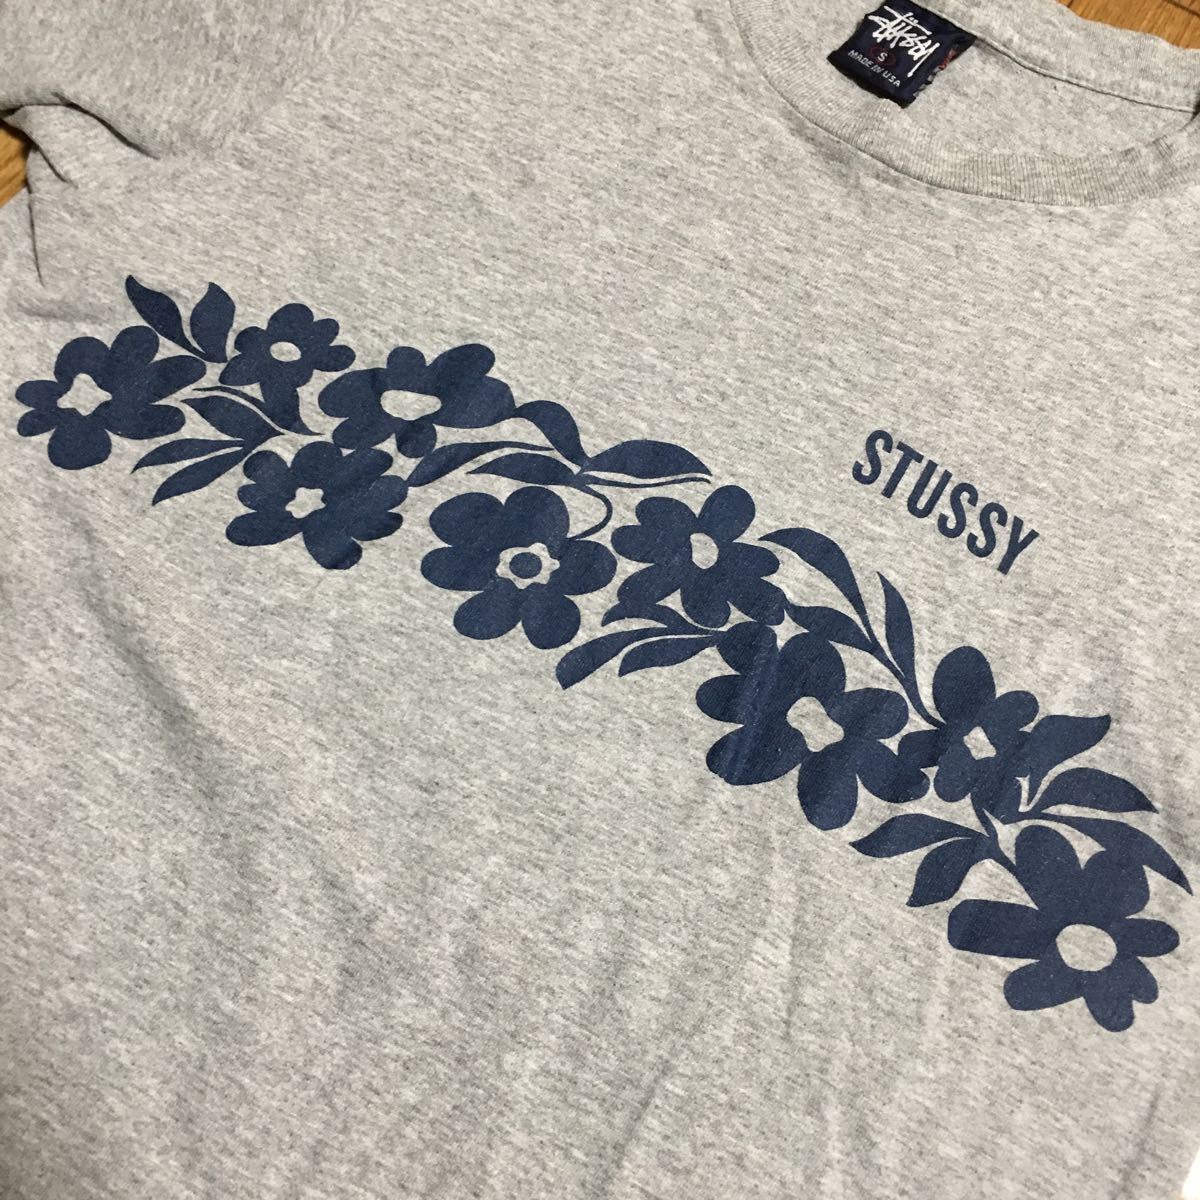 90s USA製 stussy 花柄 Tシャツ グレー Sサイズ 古着 ヴィンテージ ステューシー